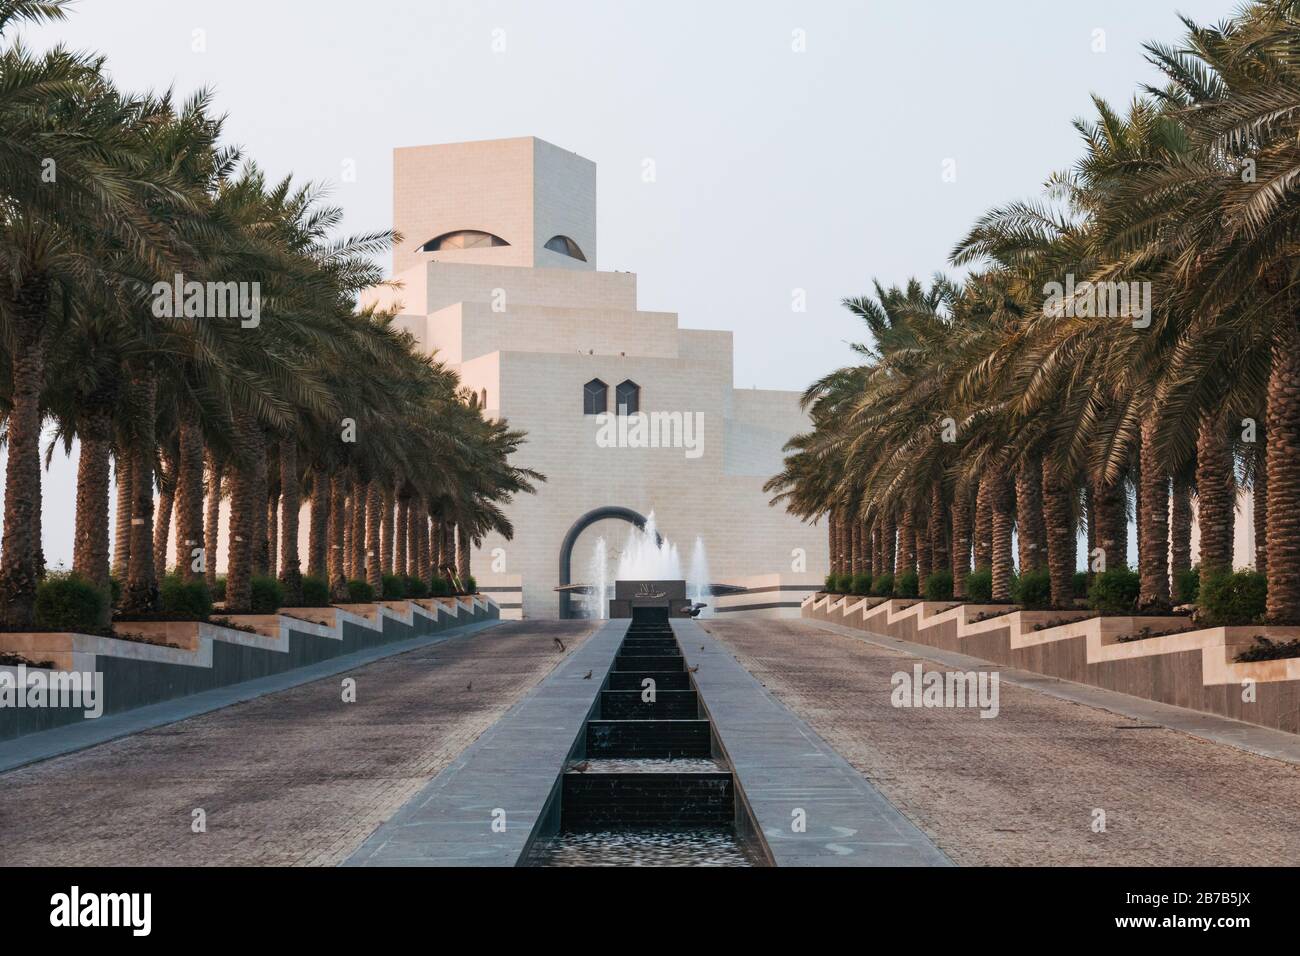 El Museo de Arte Islámico de Doha, con influencia arquitectónica islámica en un aspecto cuboide, diseñado por Ieoh Ming Pei Foto de stock